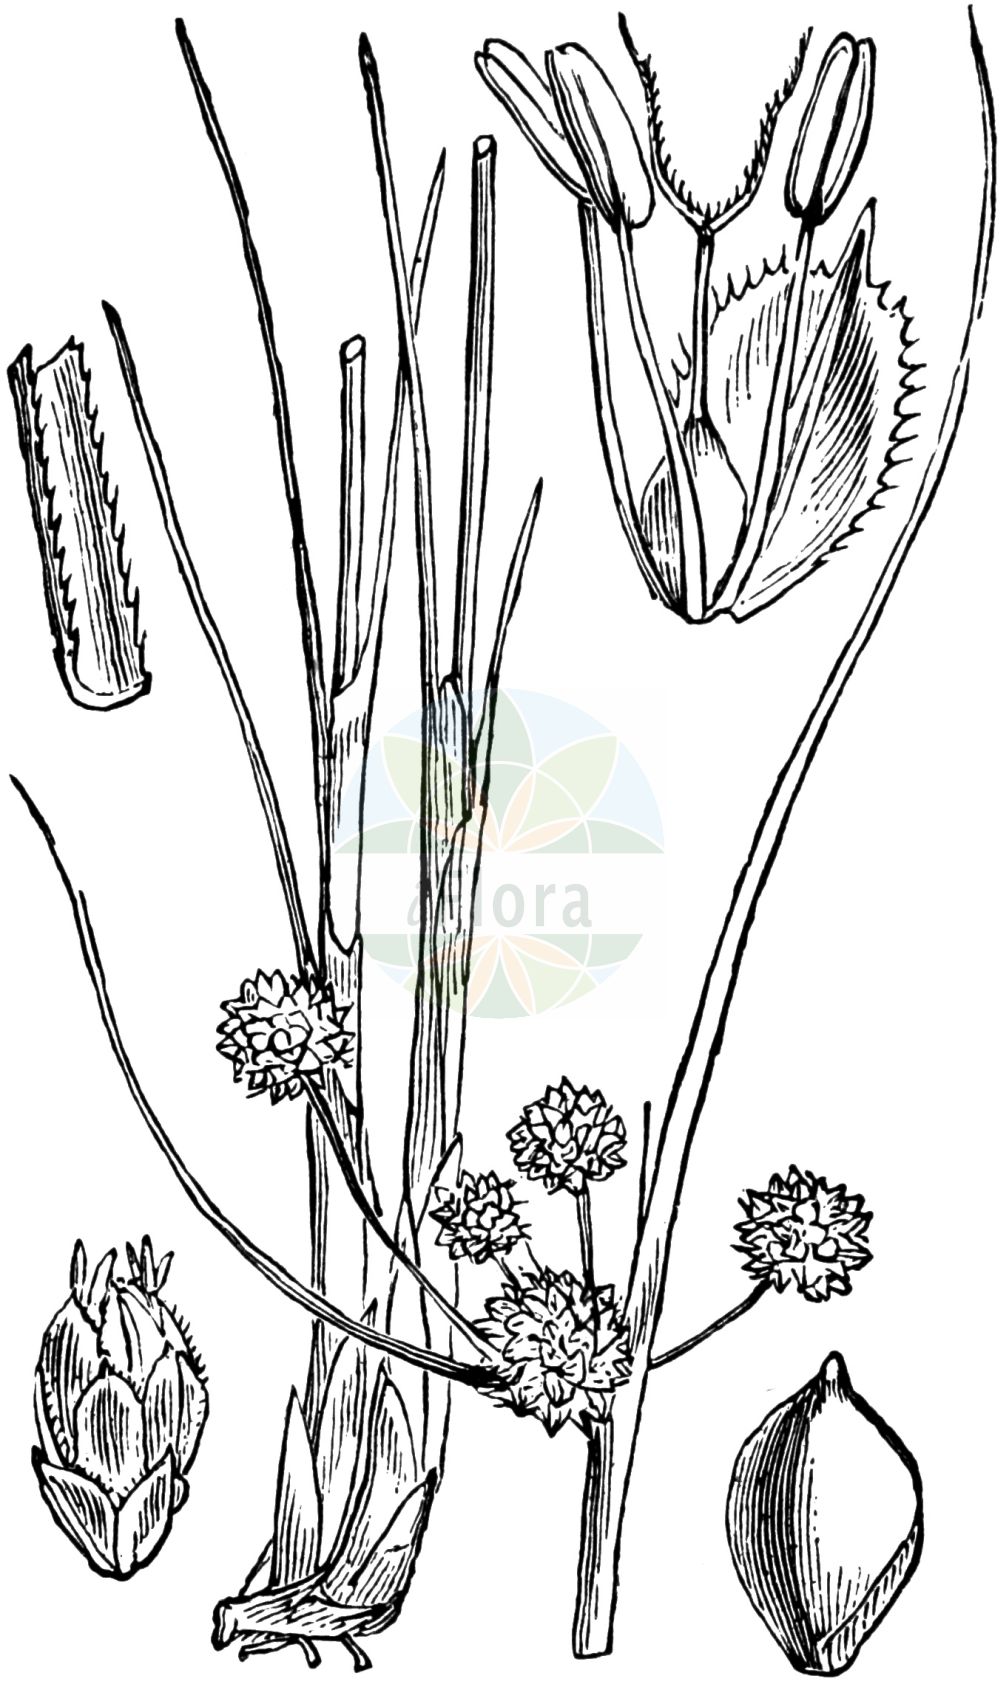 Historische Abbildung von Scirpoides holoschoenus (Gewöhnliche Kugelsimse - Round-headed Club-Rush). Das Bild zeigt Blatt, Bluete, Frucht und Same. ---- Historical Drawing of Scirpoides holoschoenus (Gewöhnliche Kugelsimse - Round-headed Club-Rush). The image is showing leaf, flower, fruit and seed.(Scirpoides holoschoenus,Gewöhnliche Kugelsimse,Round-headed Club-Rush,Holoschoenus australis,Holoschoenus romanus,Holoschoenus vulgaris,Isolepis holoschoenus,Scirpoides holoschoenoides,Scirpoides holoschoenus,Scirpus australis,Scirpus globiferus,Scirpus holoschoenus,Scirpus romanus,Gewoehnliche Kugelsimse,Glanz-Binse,Immergruene Kugelsimse,Kugelbinse,Kugelsimse,Round-headed Club-Rush,Clustered Clubrush,Roundhead Bulrush,Scirpoides,Kugelbinse,Club-rush,Cyperaceae,Sauergräser,Sedge family,Blatt,Bluete,Frucht,Same,leaf,flower,fruit,seed,Fitch et al. (1880))